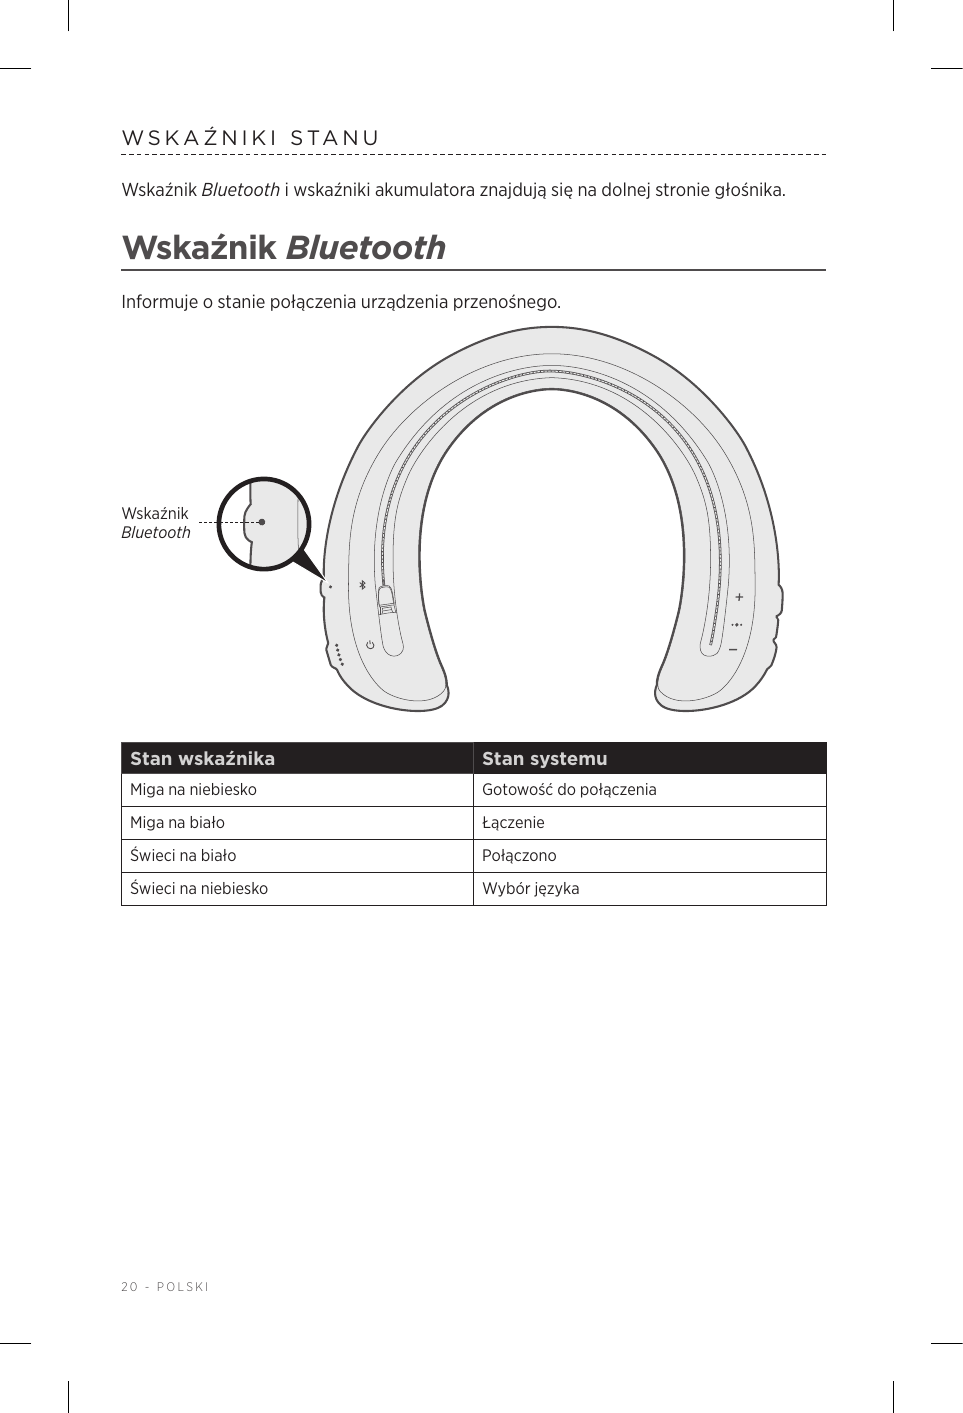 20 - POLSKIWSKAŹNIKI STANUWskaźnik Bluetooth iwskaźniki akumulatora znajdują się na dolnej stronie głośnika.Wskaźnik BluetoothInformuje ostanie połączenia urządzenia przenośnego.Wskaźnik BluetoothStan wskaźnika Stan systemuMiga na niebiesko Gotowość do połączeniaMiga na biało ŁączenieŚwieci na biało PołączonoŚwieci na niebiesko Wybór języka